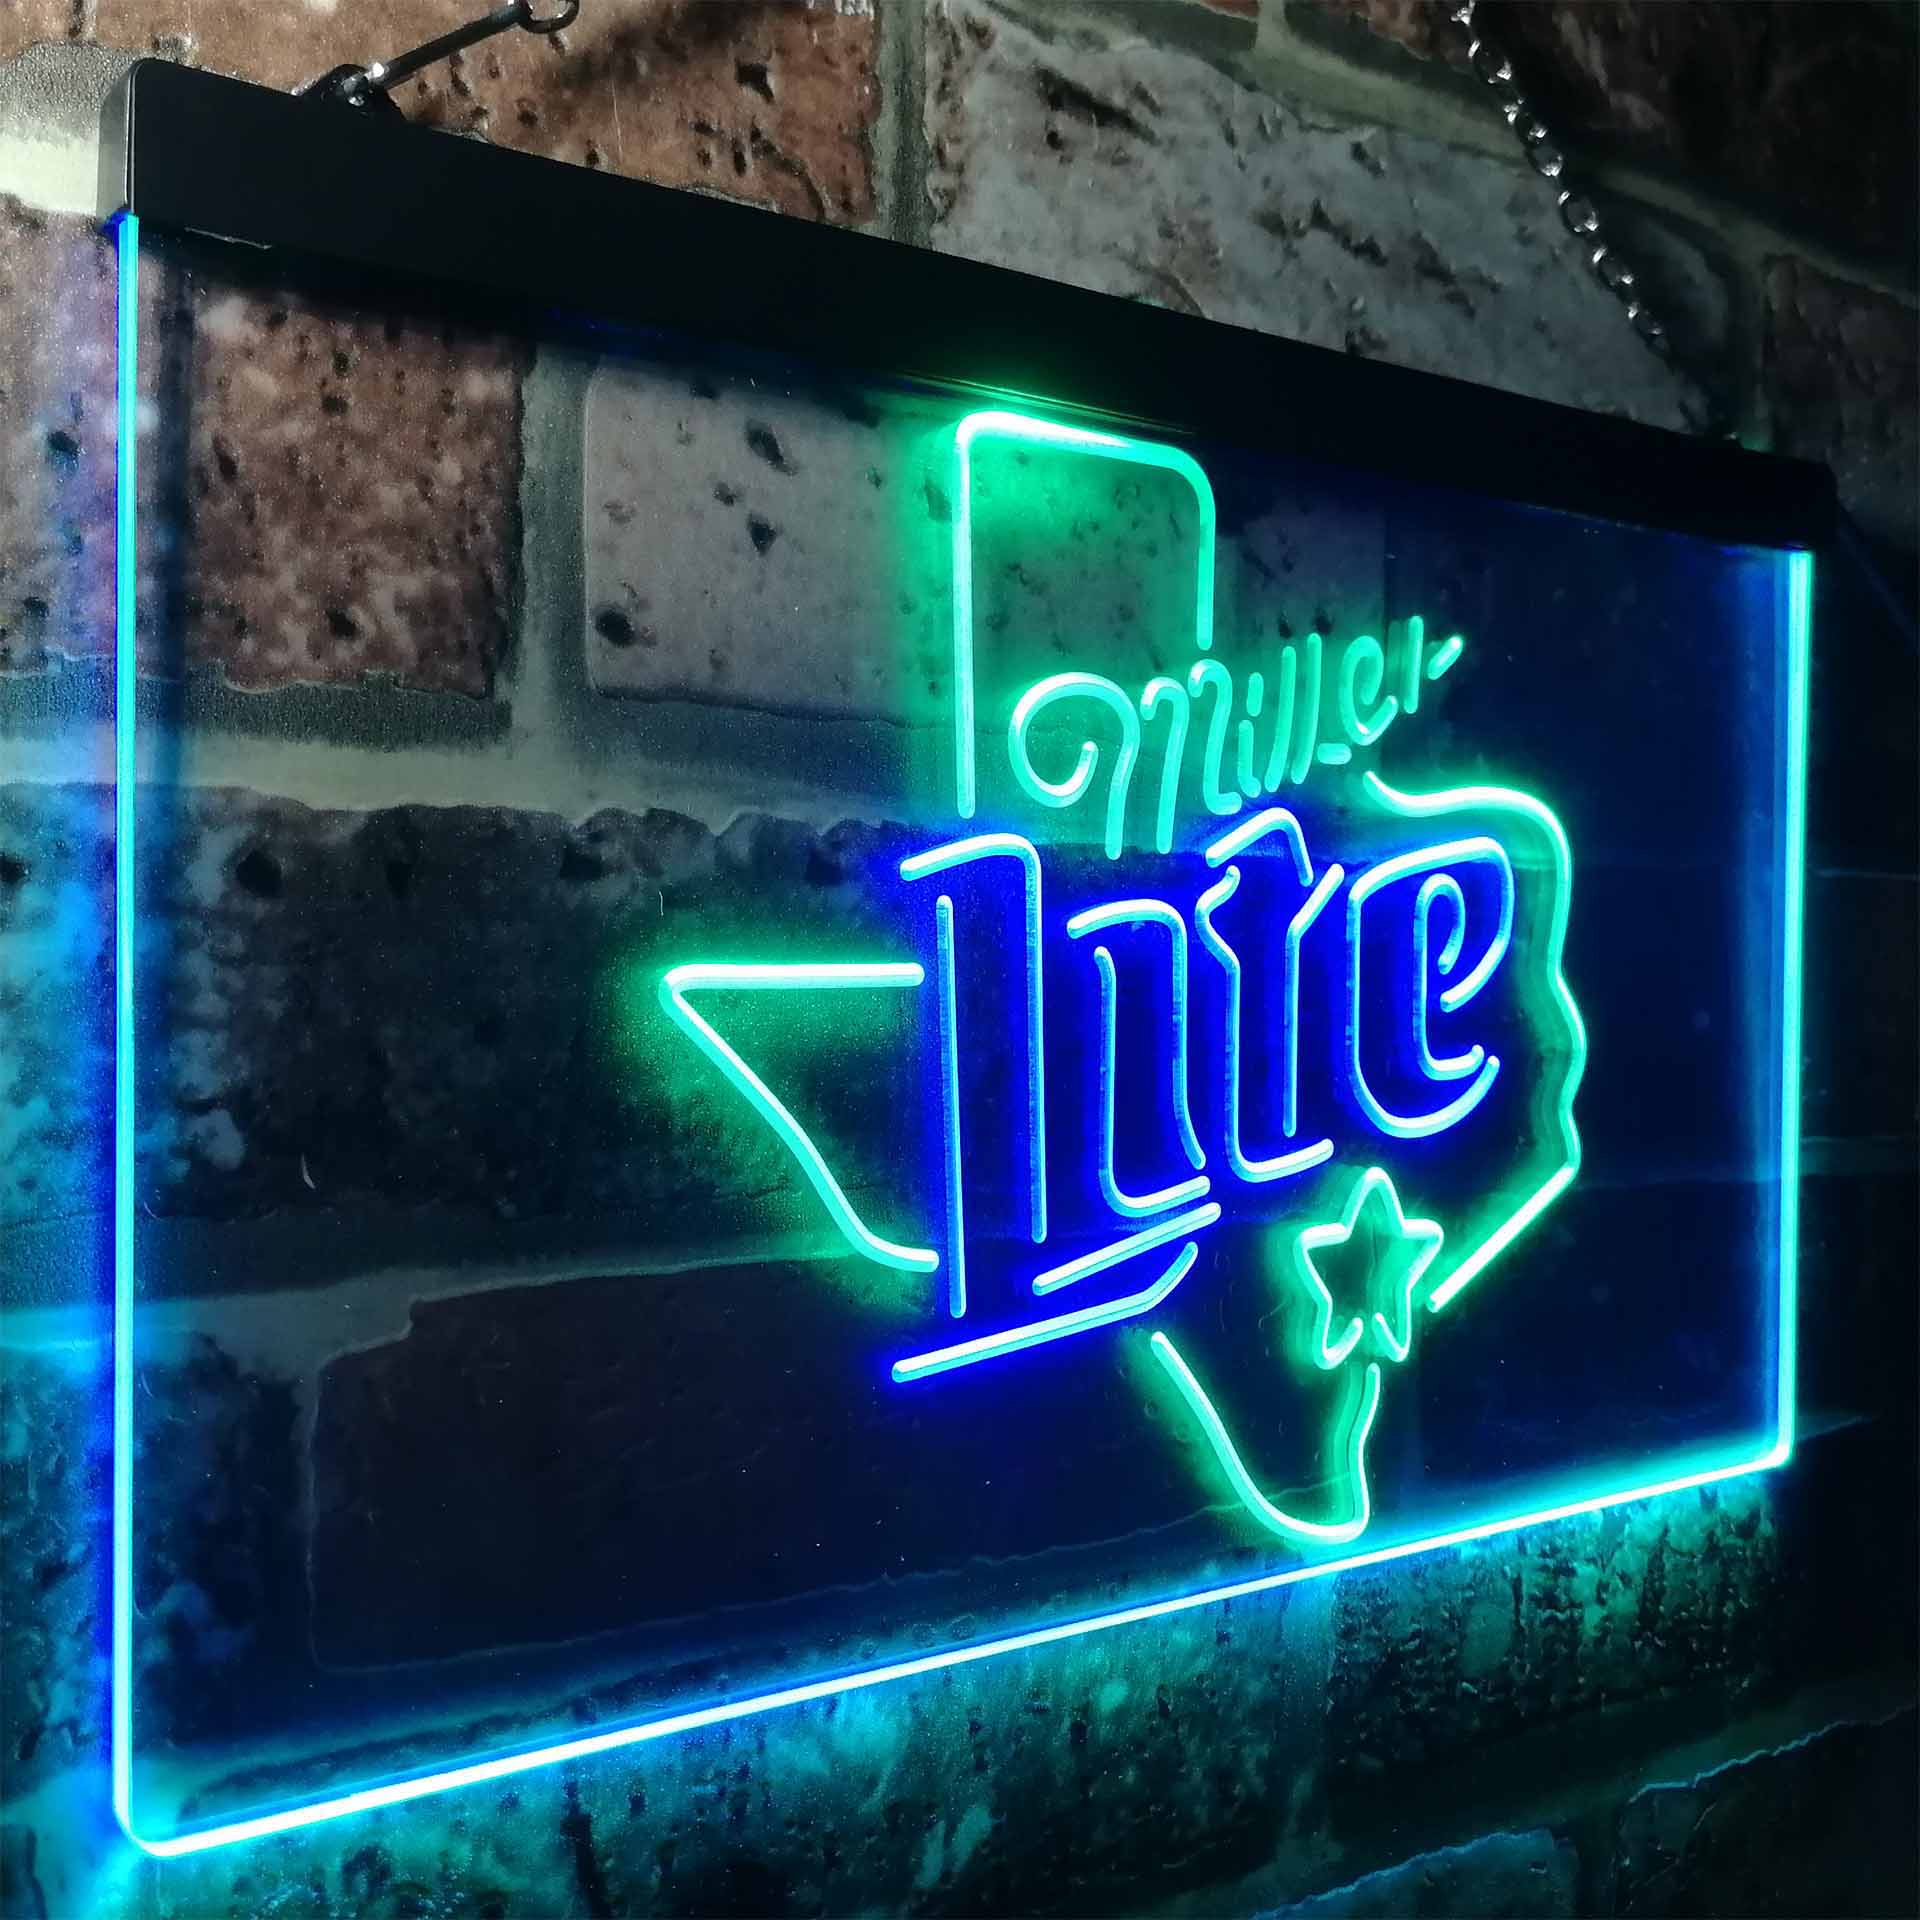 Miller Star Texas Beer Neon-Like LED Sign